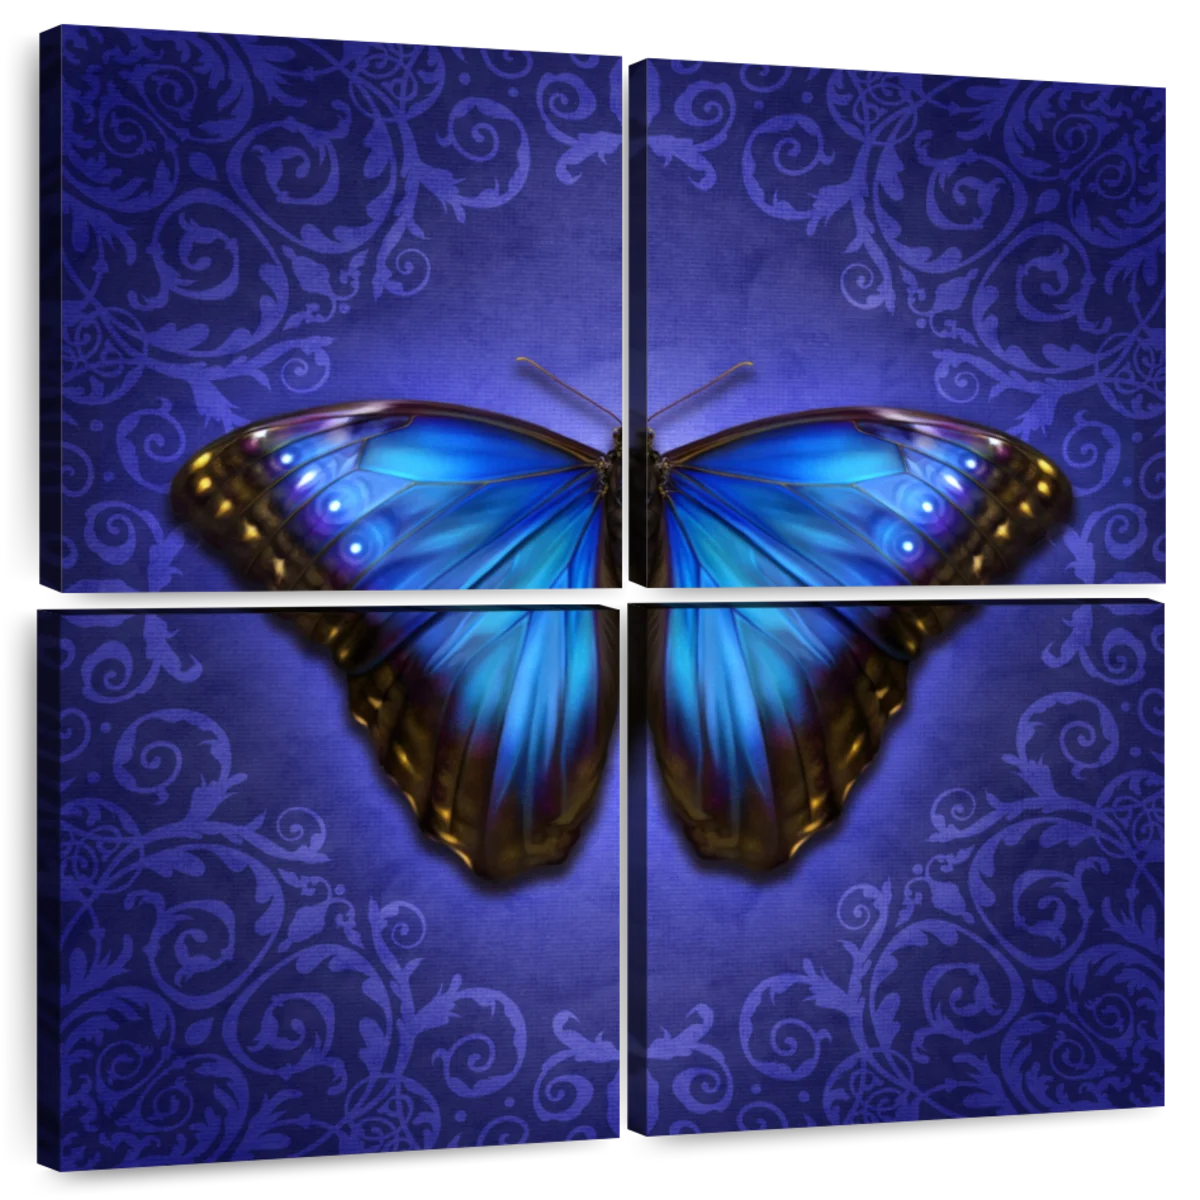 Glowing Blue Morpho Butterfly Wall Art | Digital Art | by brigid ashwood